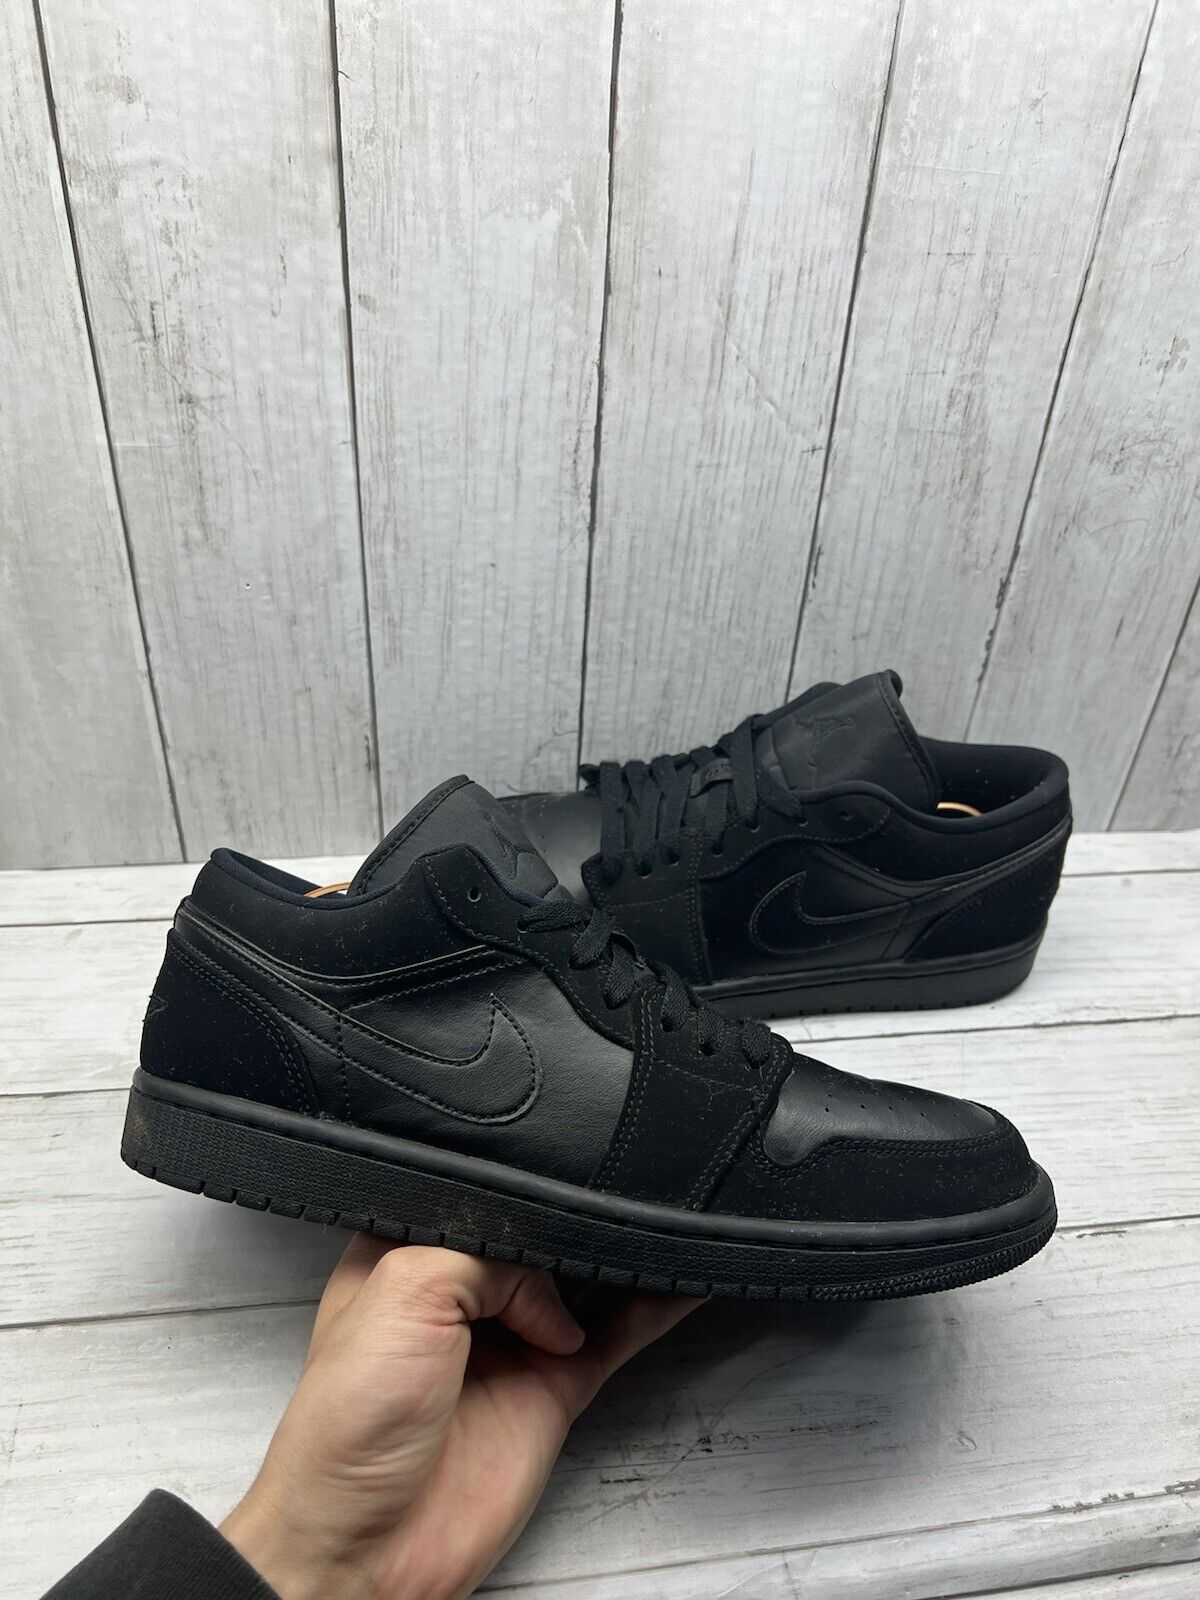 Nike Air Jordan Retro 1 Low Triple Black Shoes Sneakers Mens Size 9 553558-025